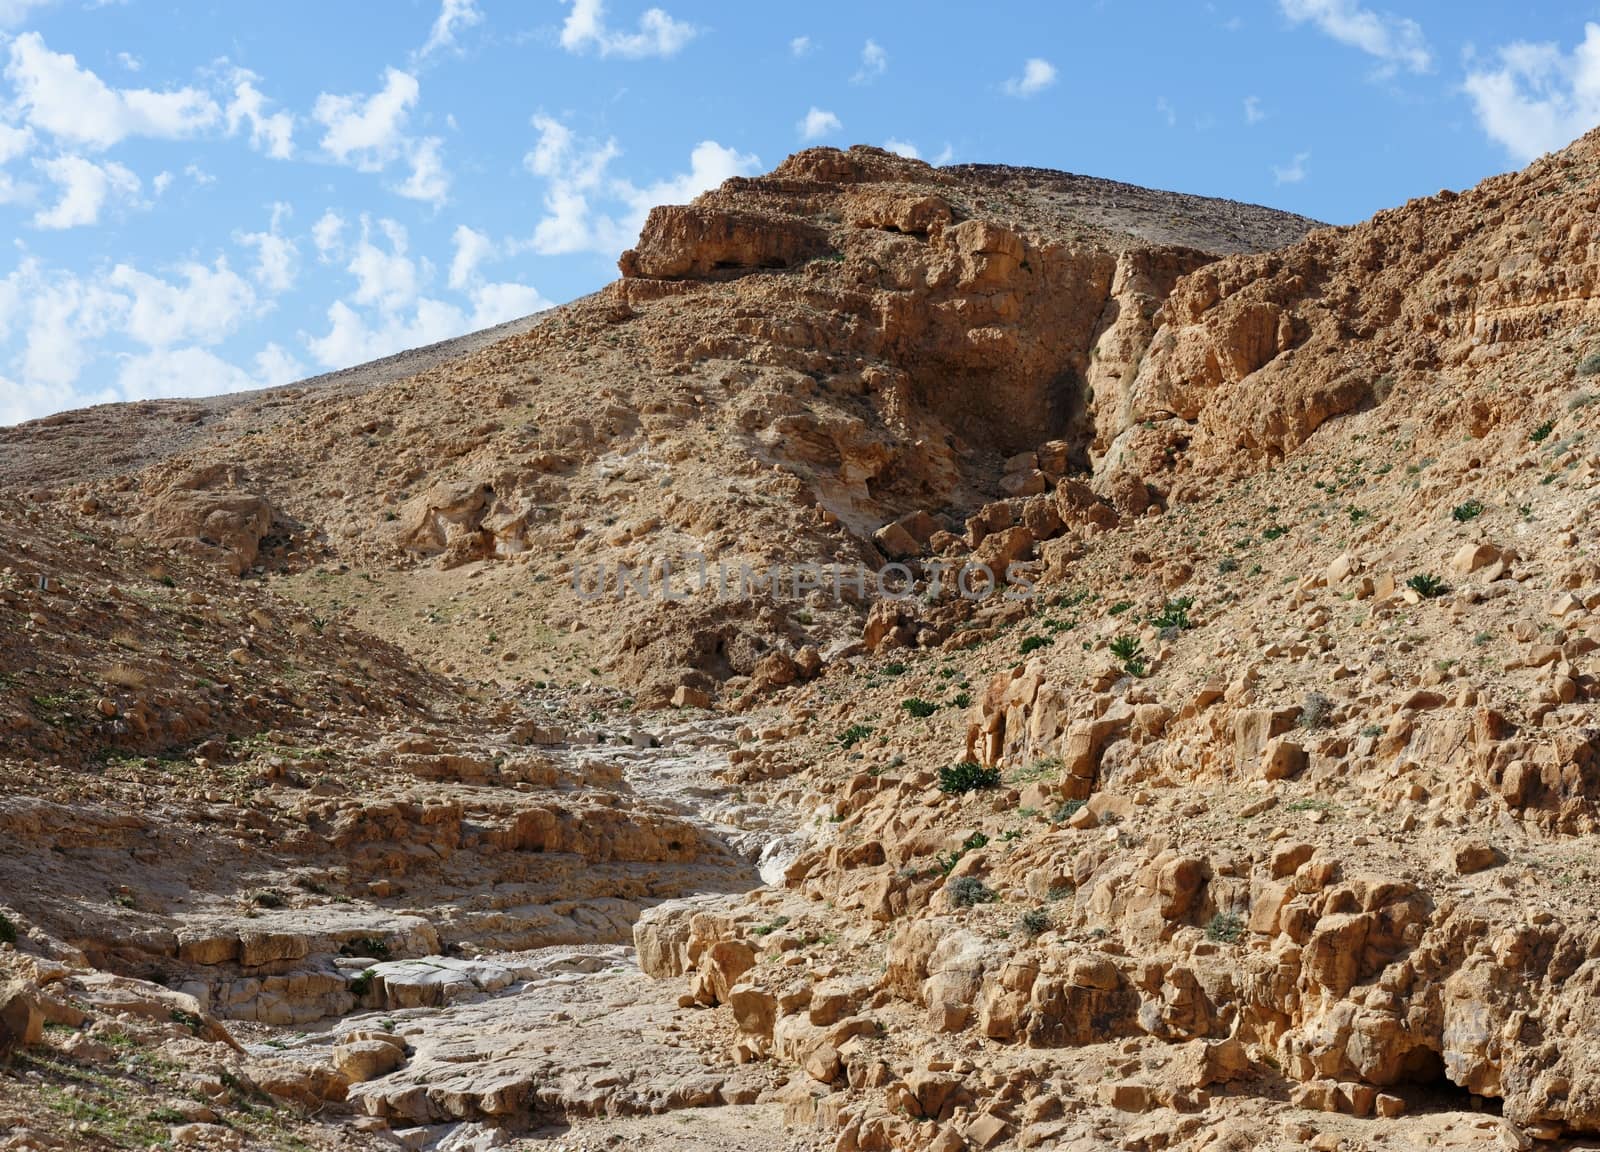 Desert canyon  Kidod Ceek near Arad in Negev, Israel